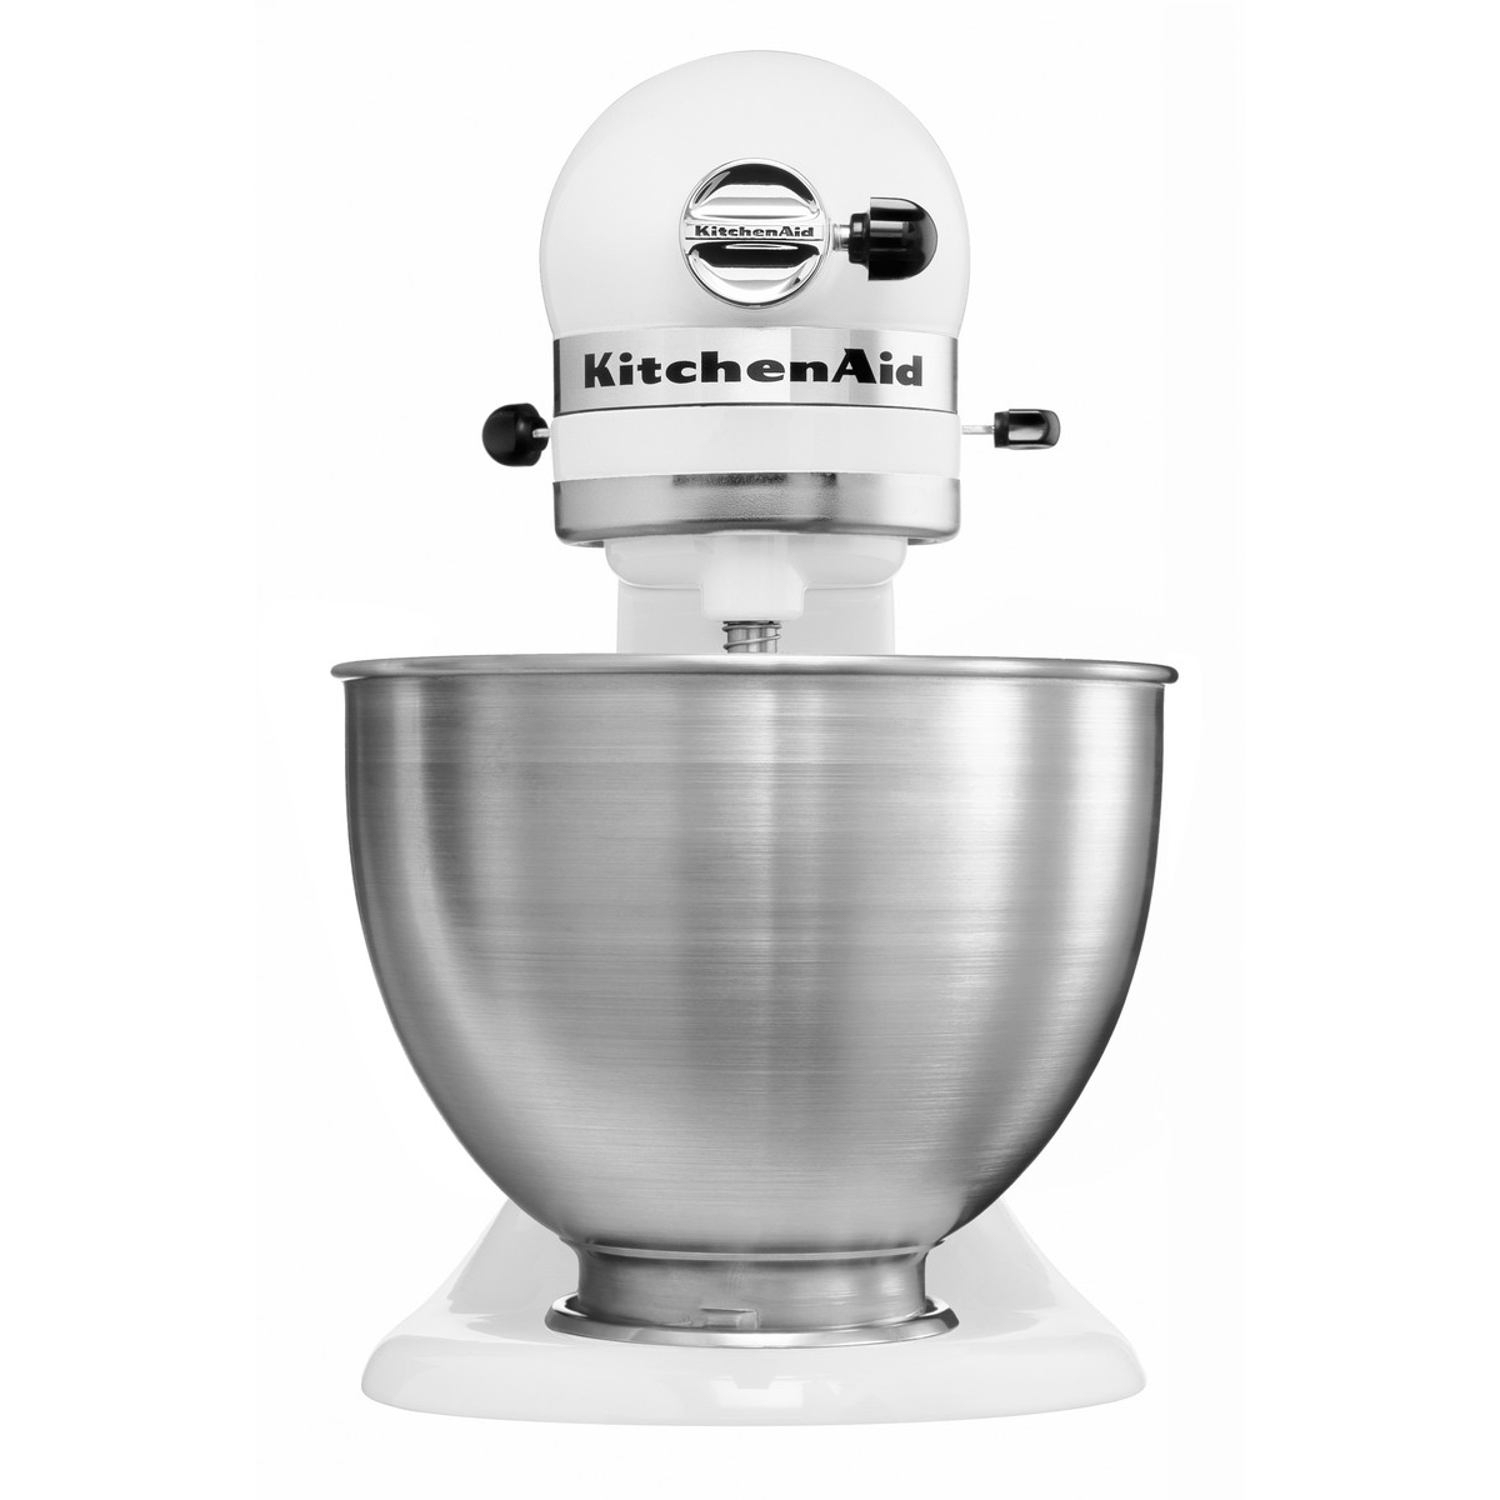 KitchenAid Classic Stand Mixer - 4.3 Litre Bowl - White - 4